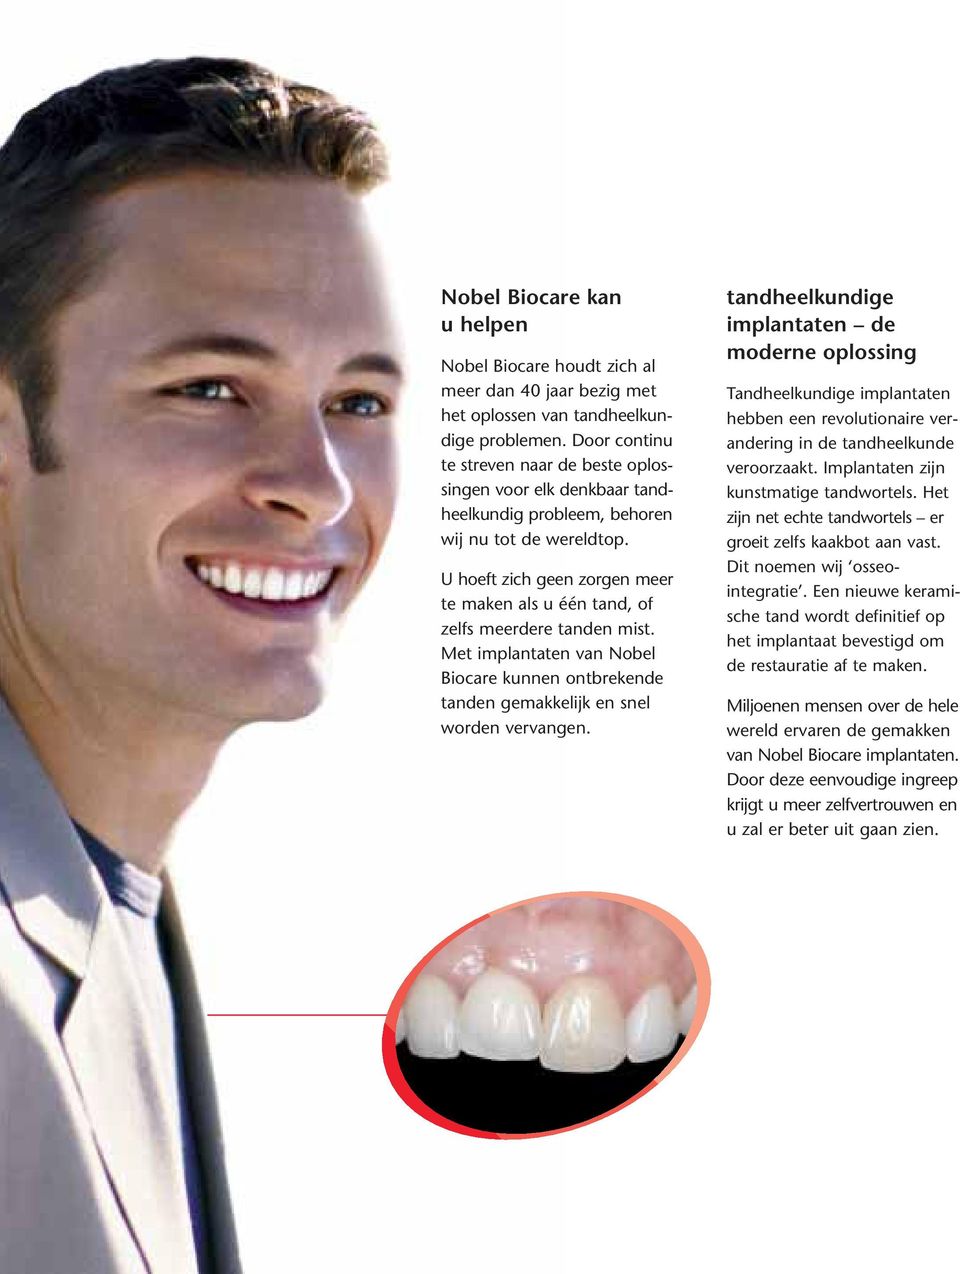 U hoeft zich geen zorgen meer te maken als u één tand, of zelfs meerdere tanden mist. Met implantaten van Nobel Biocare kunnen ontbrekende tanden gemakkelijk en snel worden vervangen.